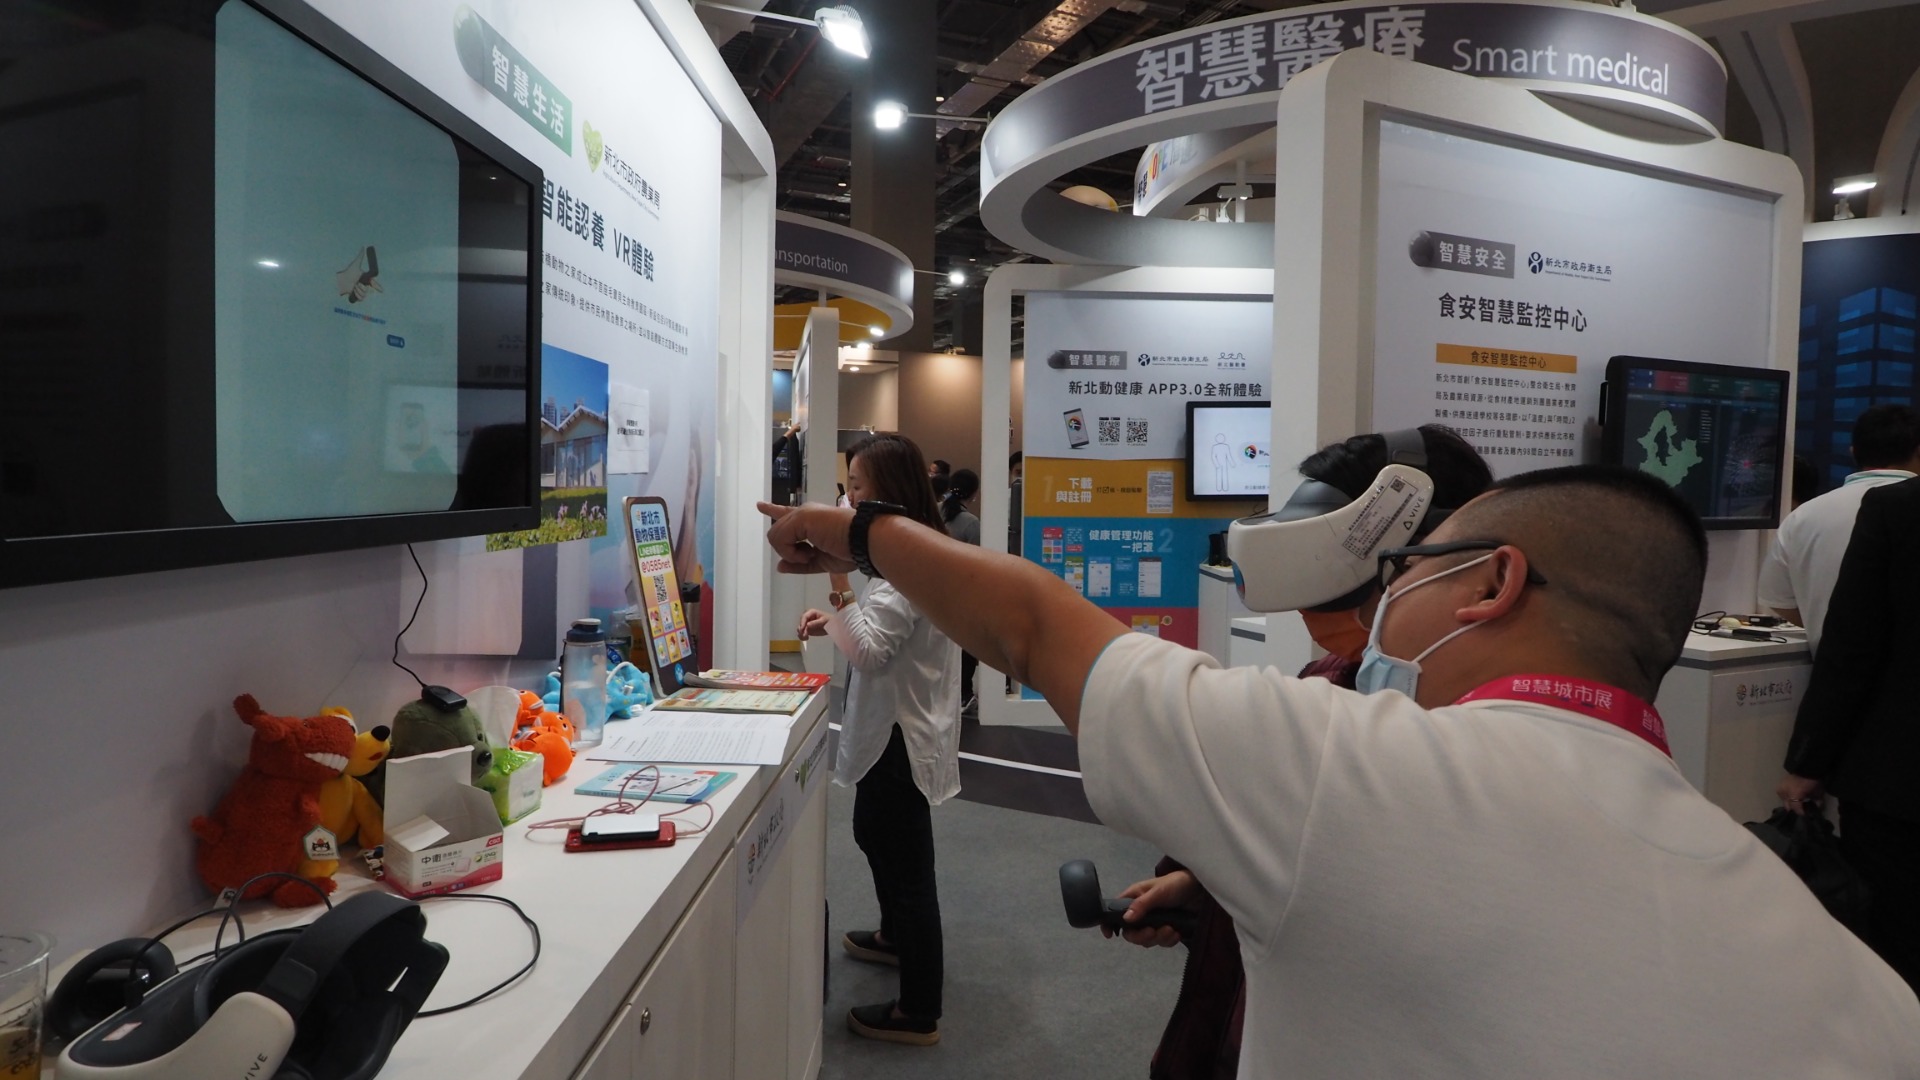 VR虛擬實境應用於實體展覽：2021智慧城市展